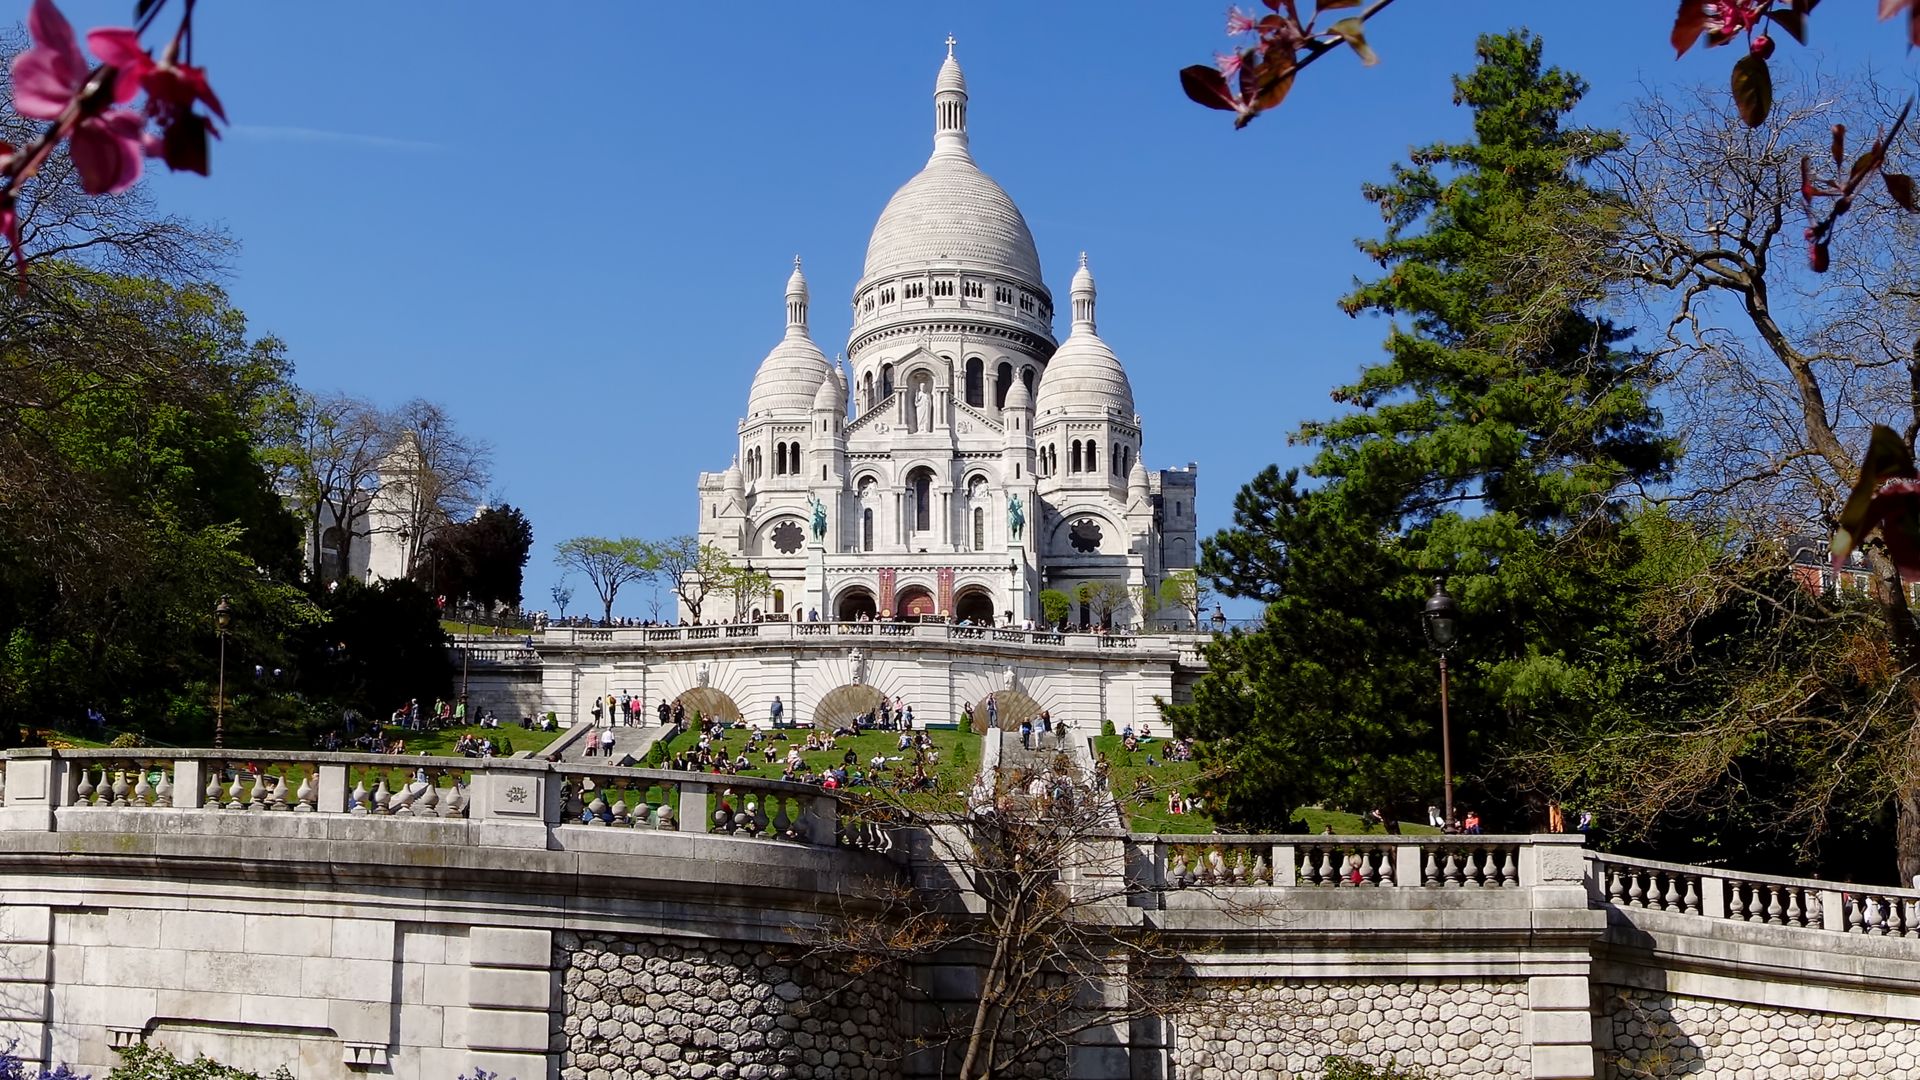 Bazilika Sacre Coeur během jara ve francouzské Paříži